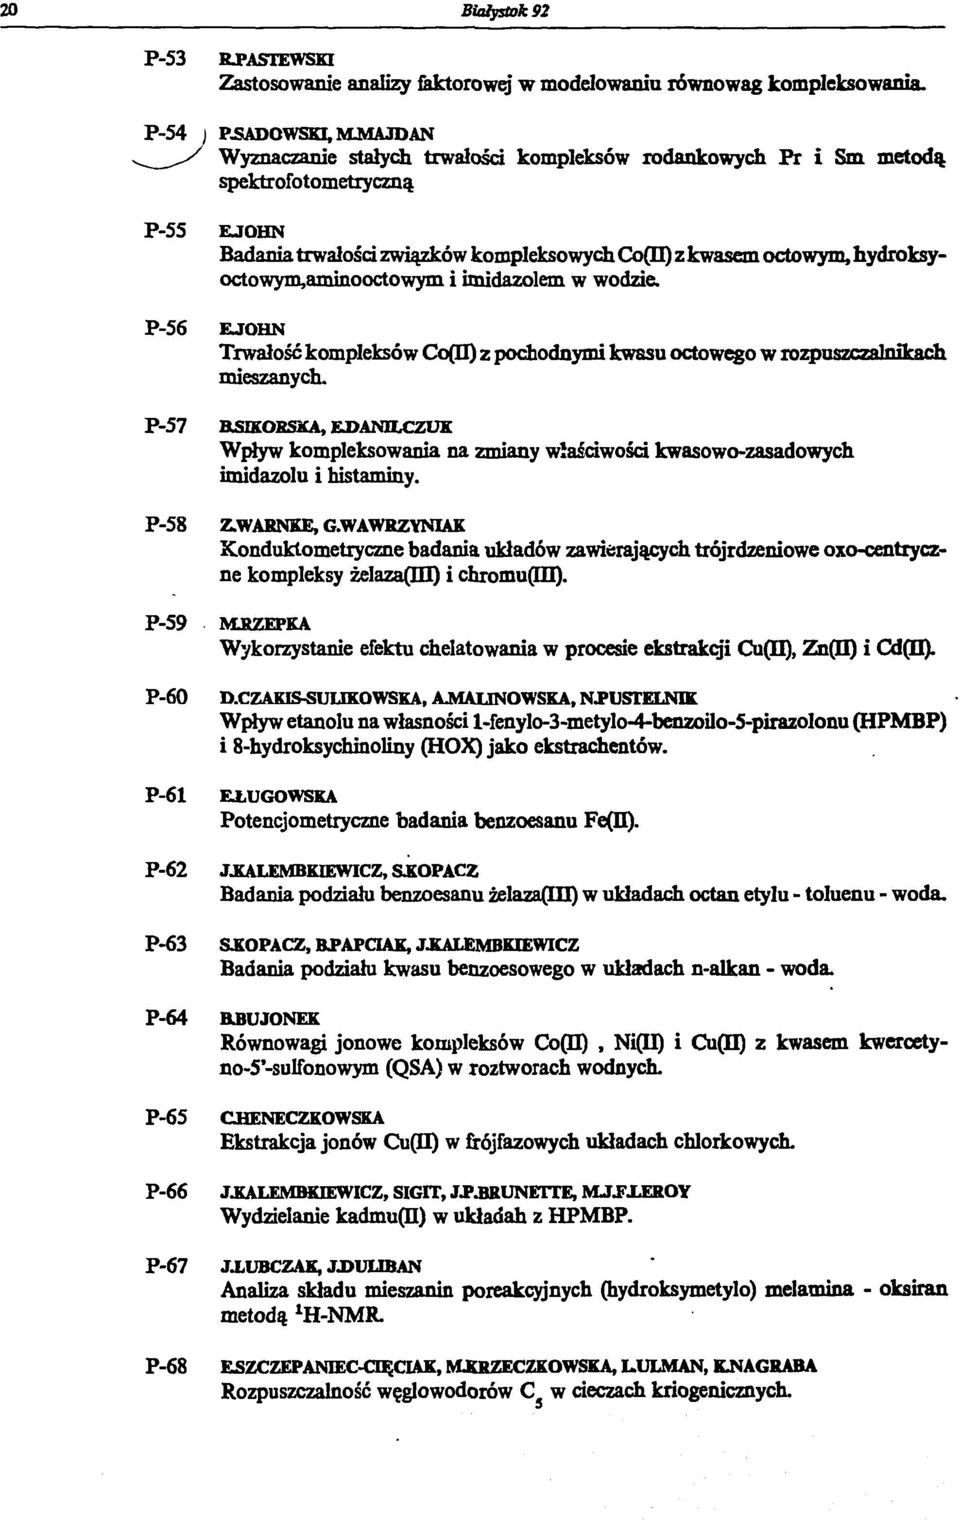 hydroksyoctowym,aminooctowym i imidazolem w wodzie. P-56 ЕЛОШЧ Trwałość kompleksów Со(П) z pochodnymi kwasu octowego w rozpuszczalnikach mieszanych.